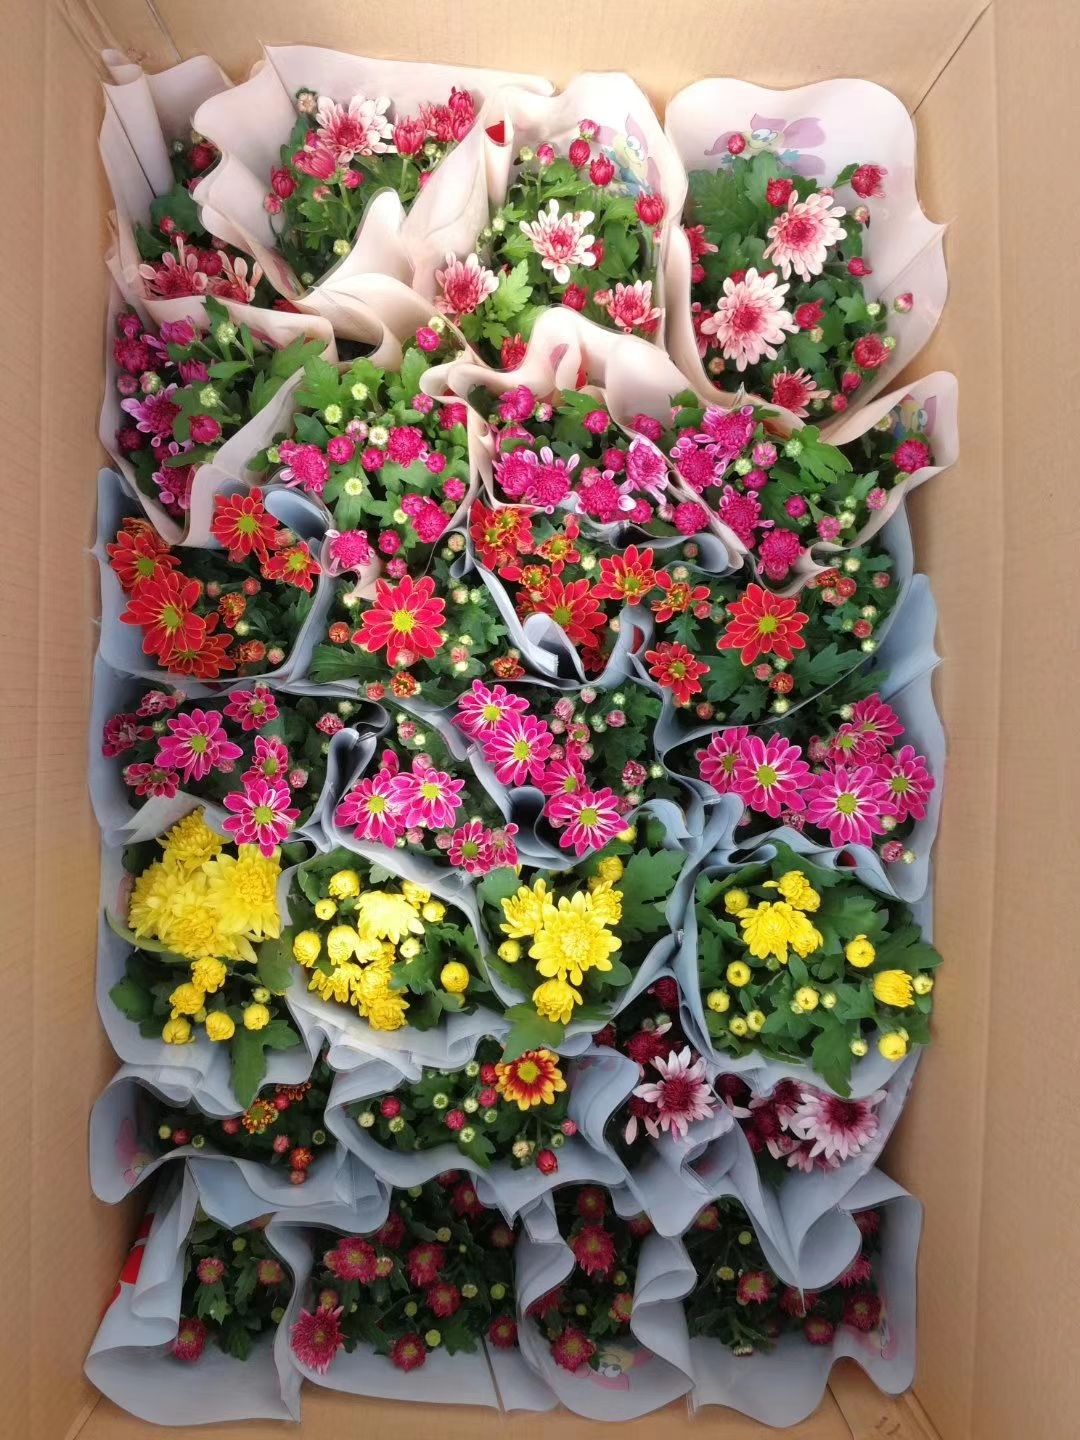 青州市铁兰盆栽  荷兰菊大量供应每年十月一前后有货